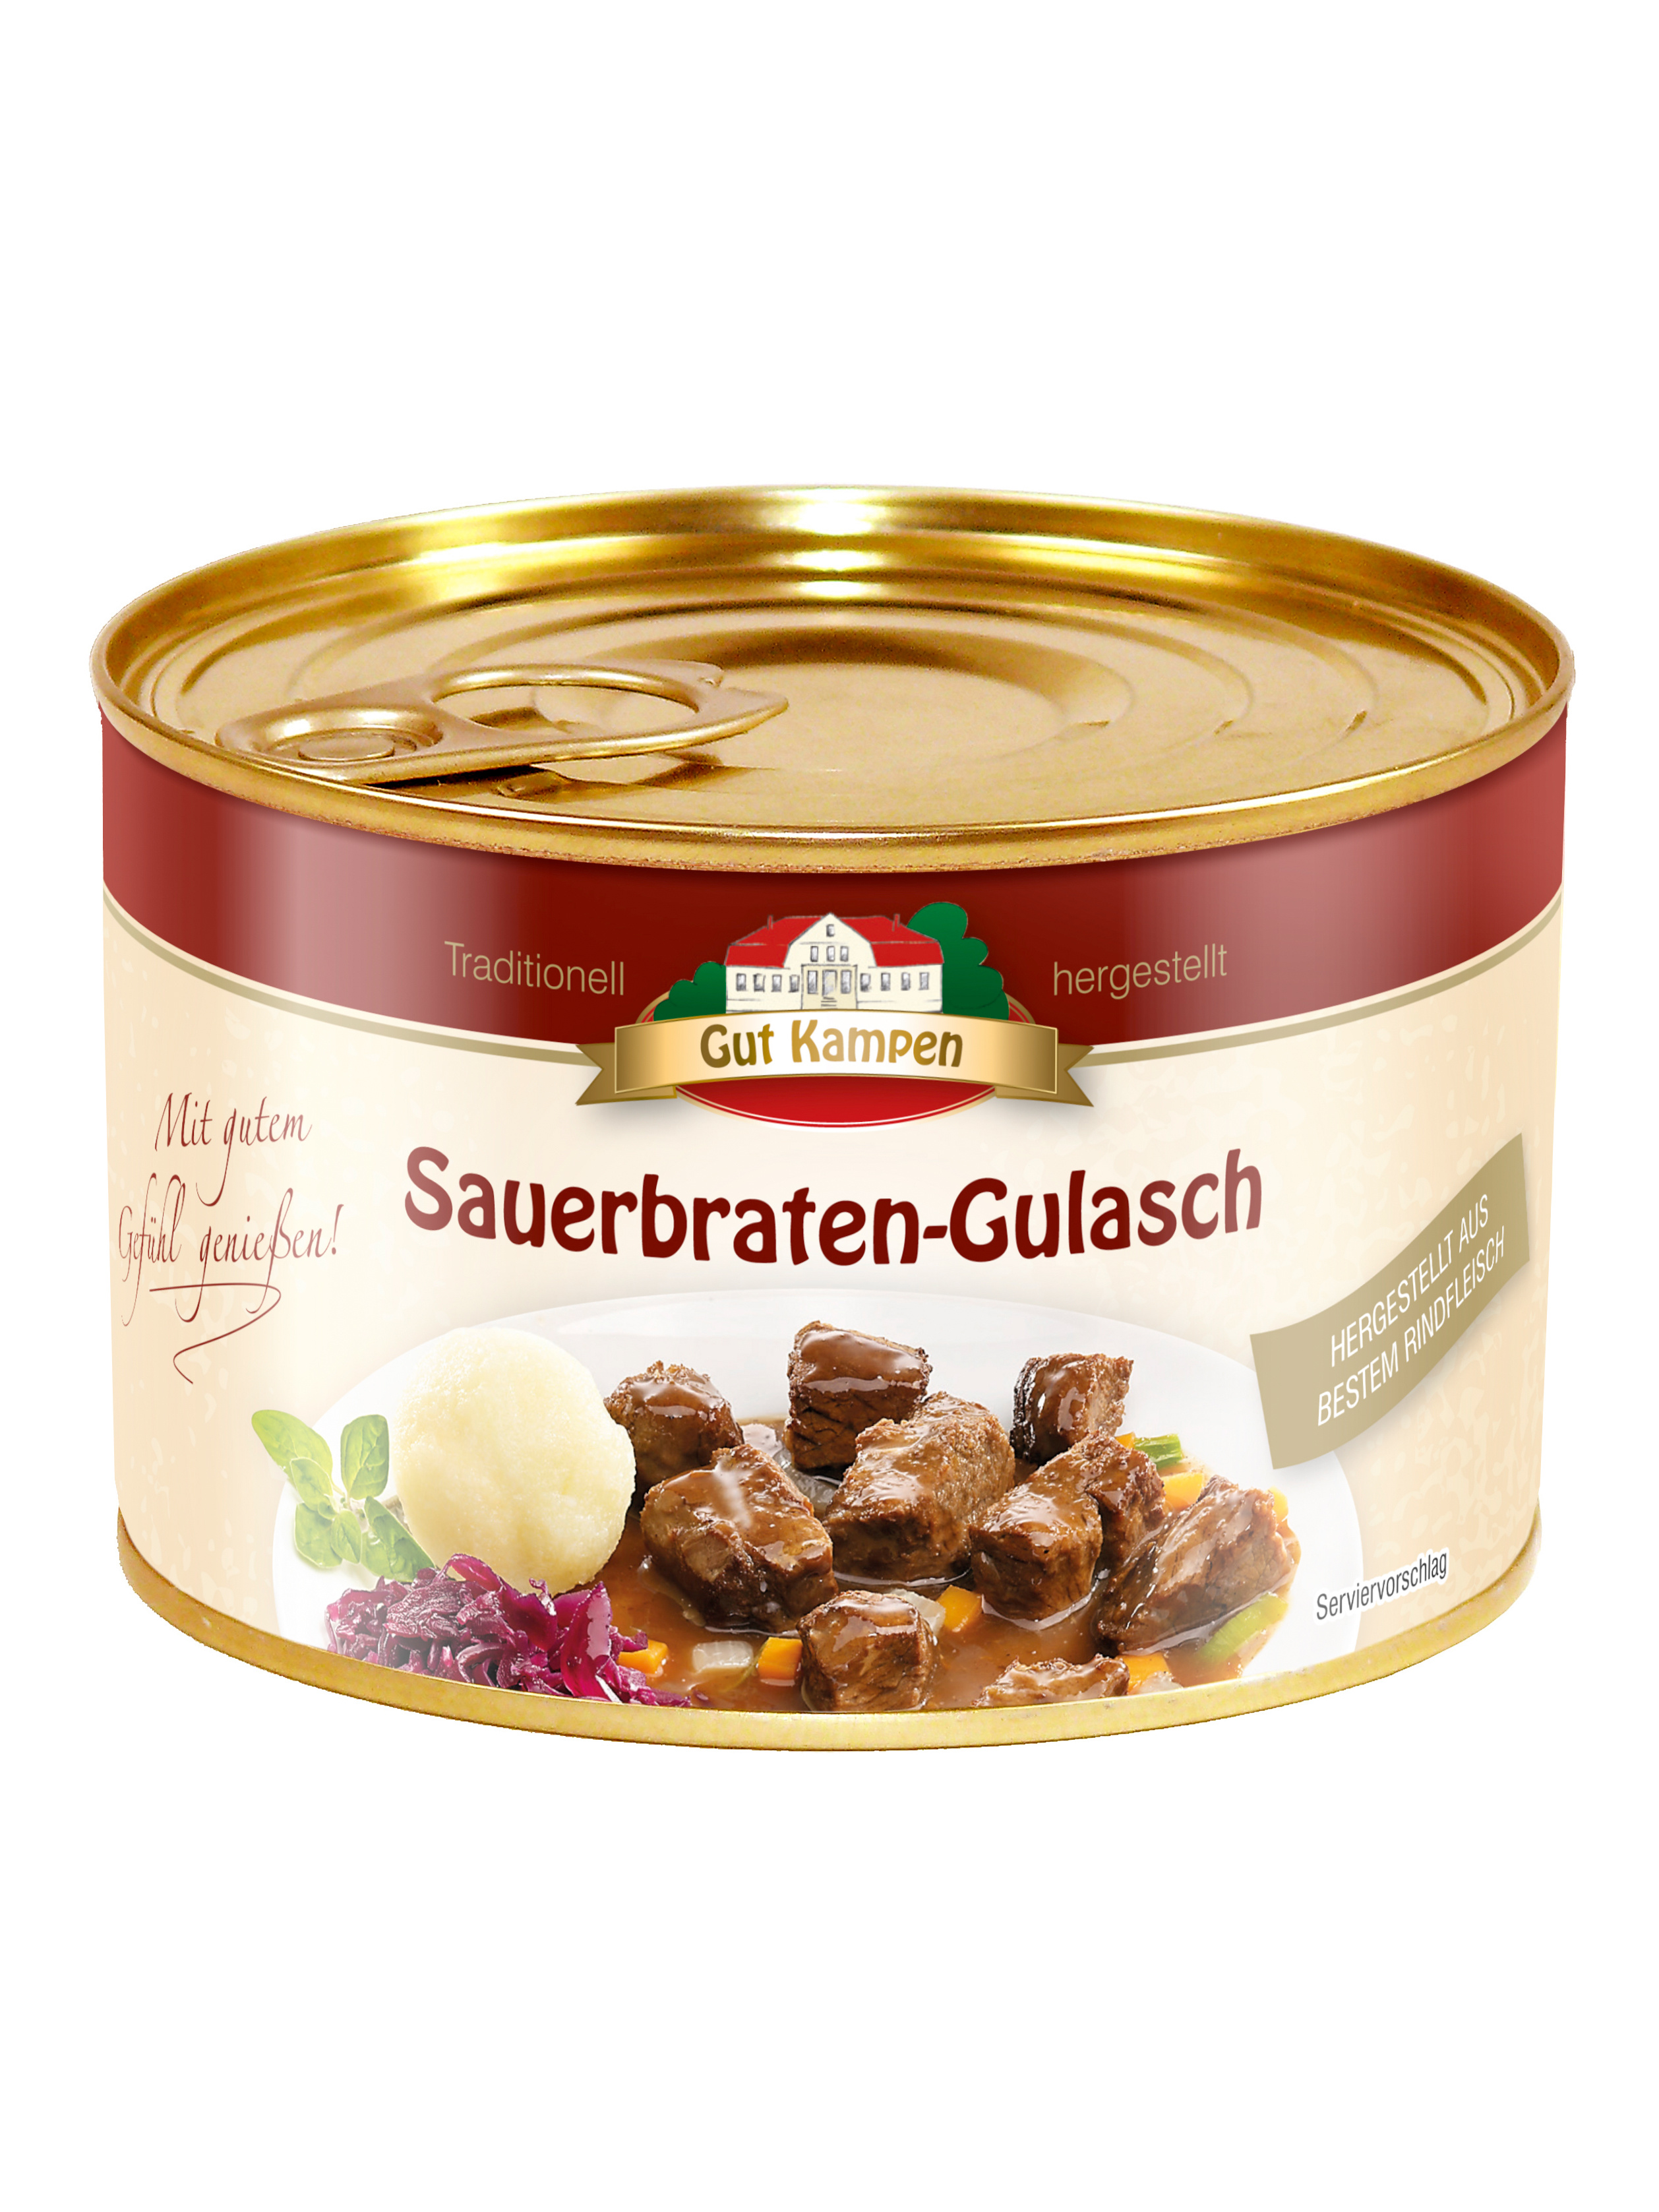 Sauerbraten-Gulasch